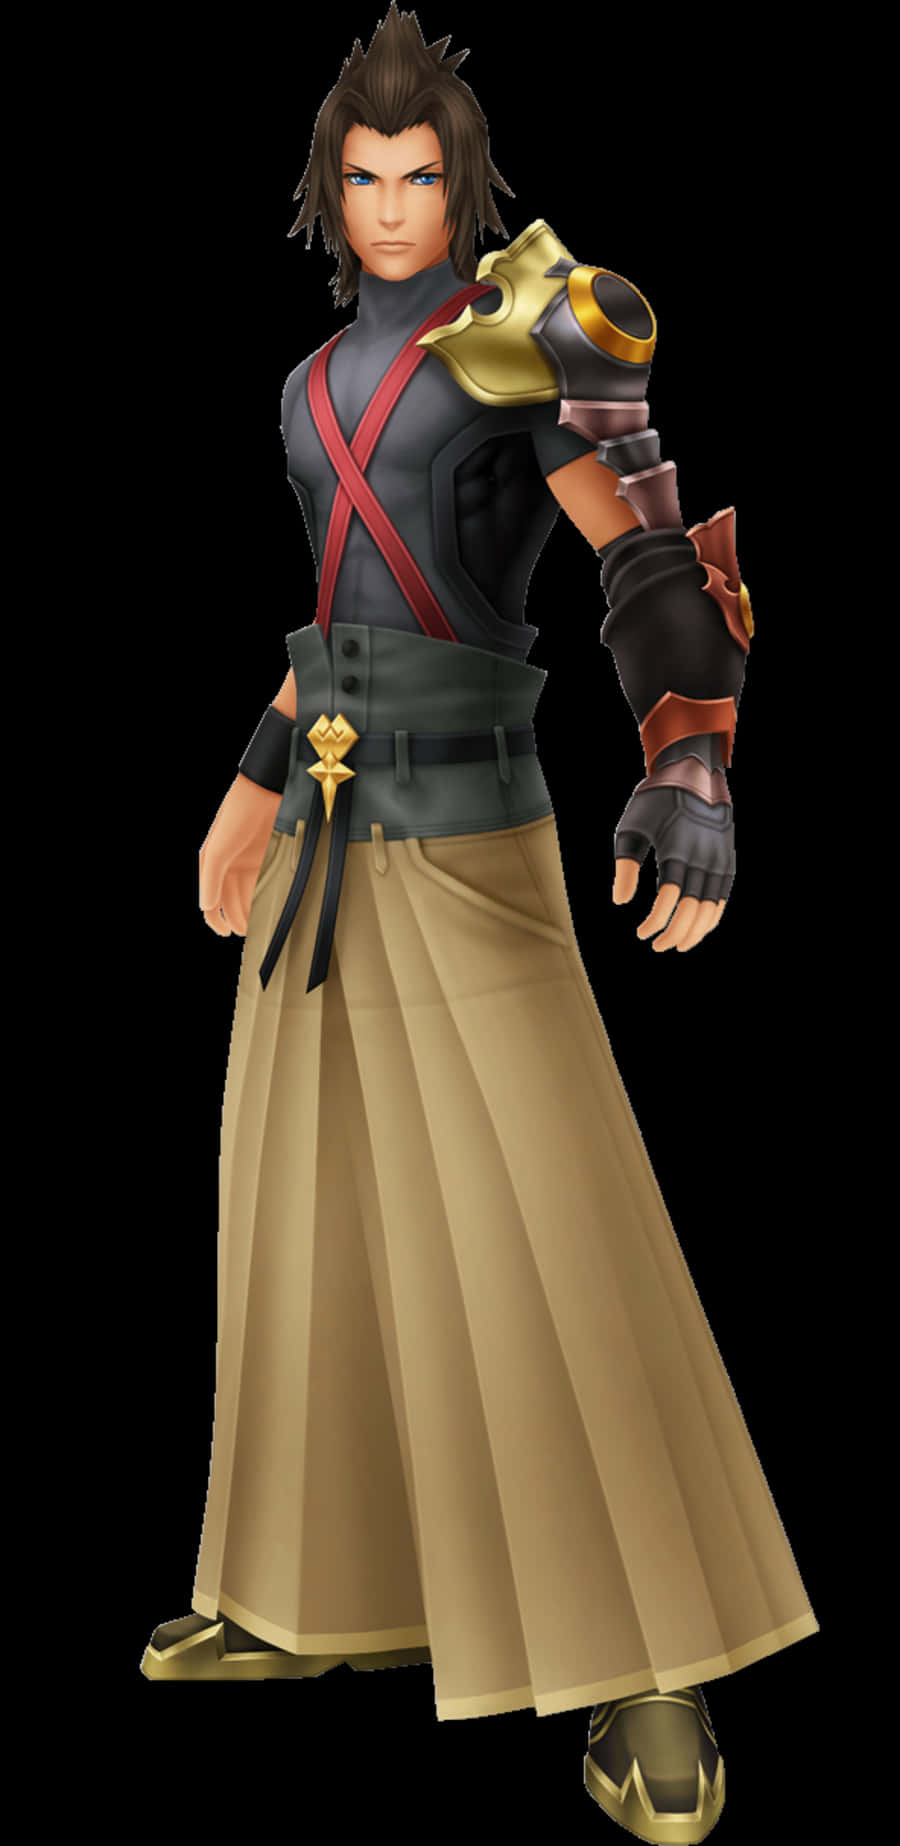 Terra in Battle Stance - Kingdom Hearts Series Wallpaper